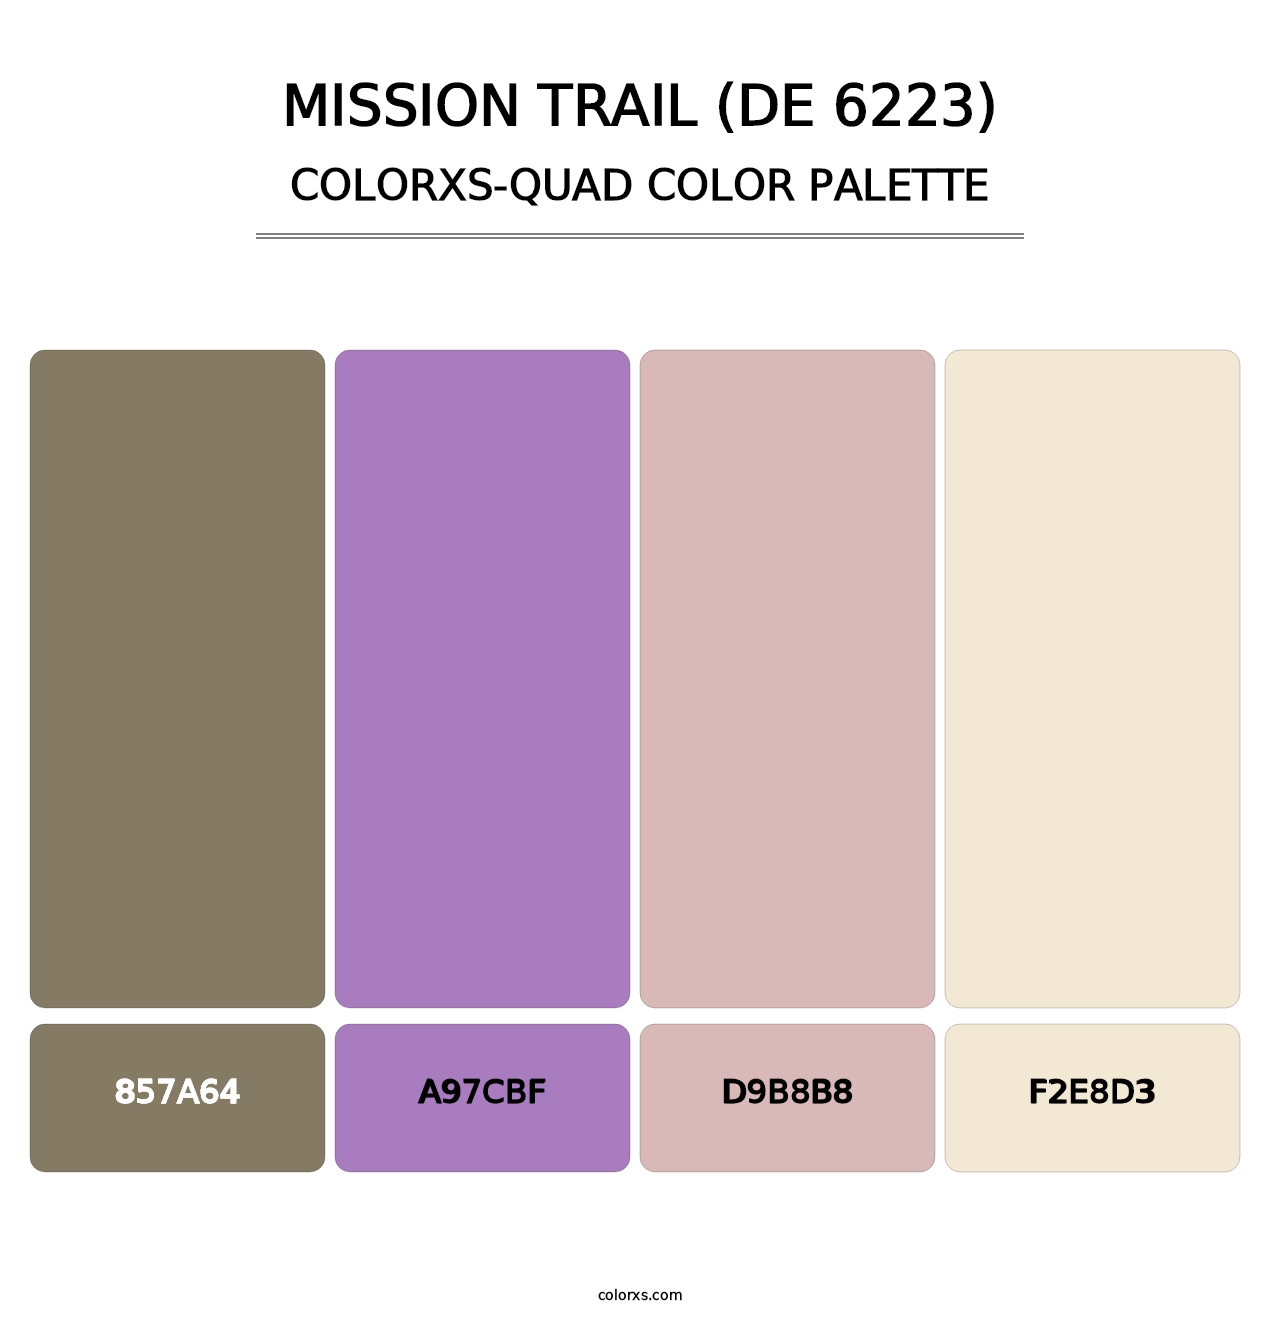 Mission Trail (DE 6223) - Colorxs Quad Palette